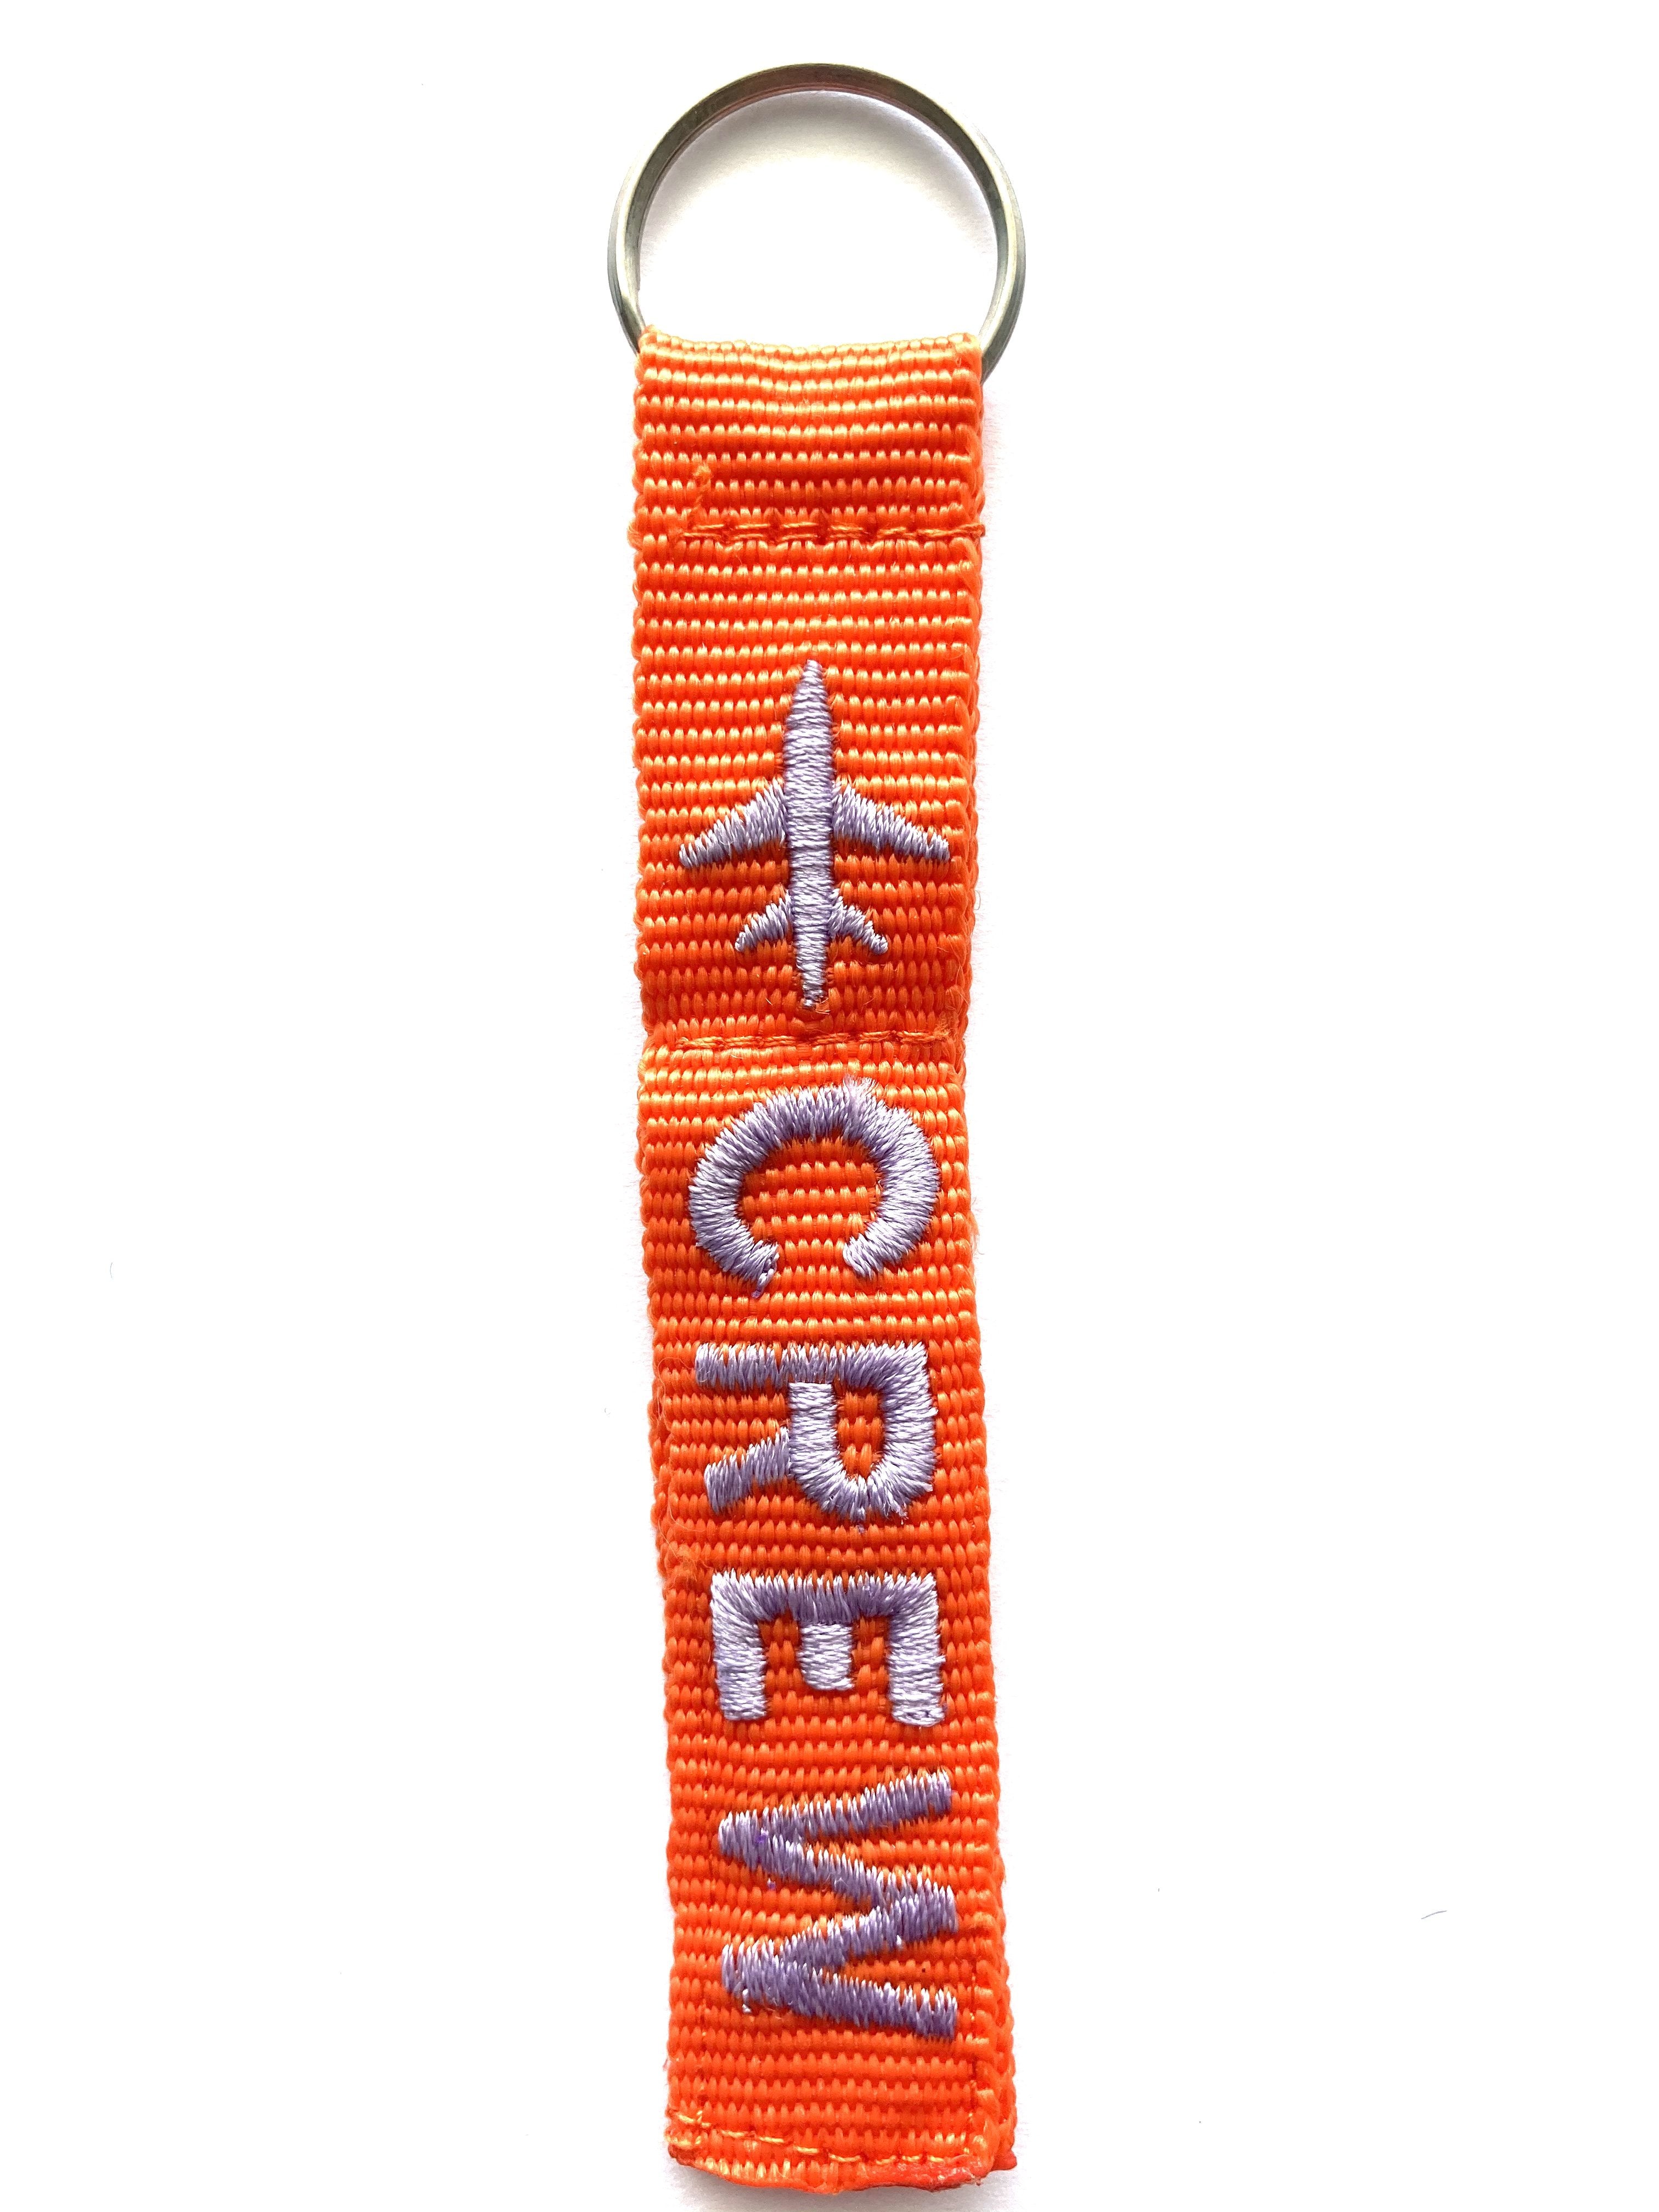 Crew Key Ring Luggage Tag - Silver on Orange